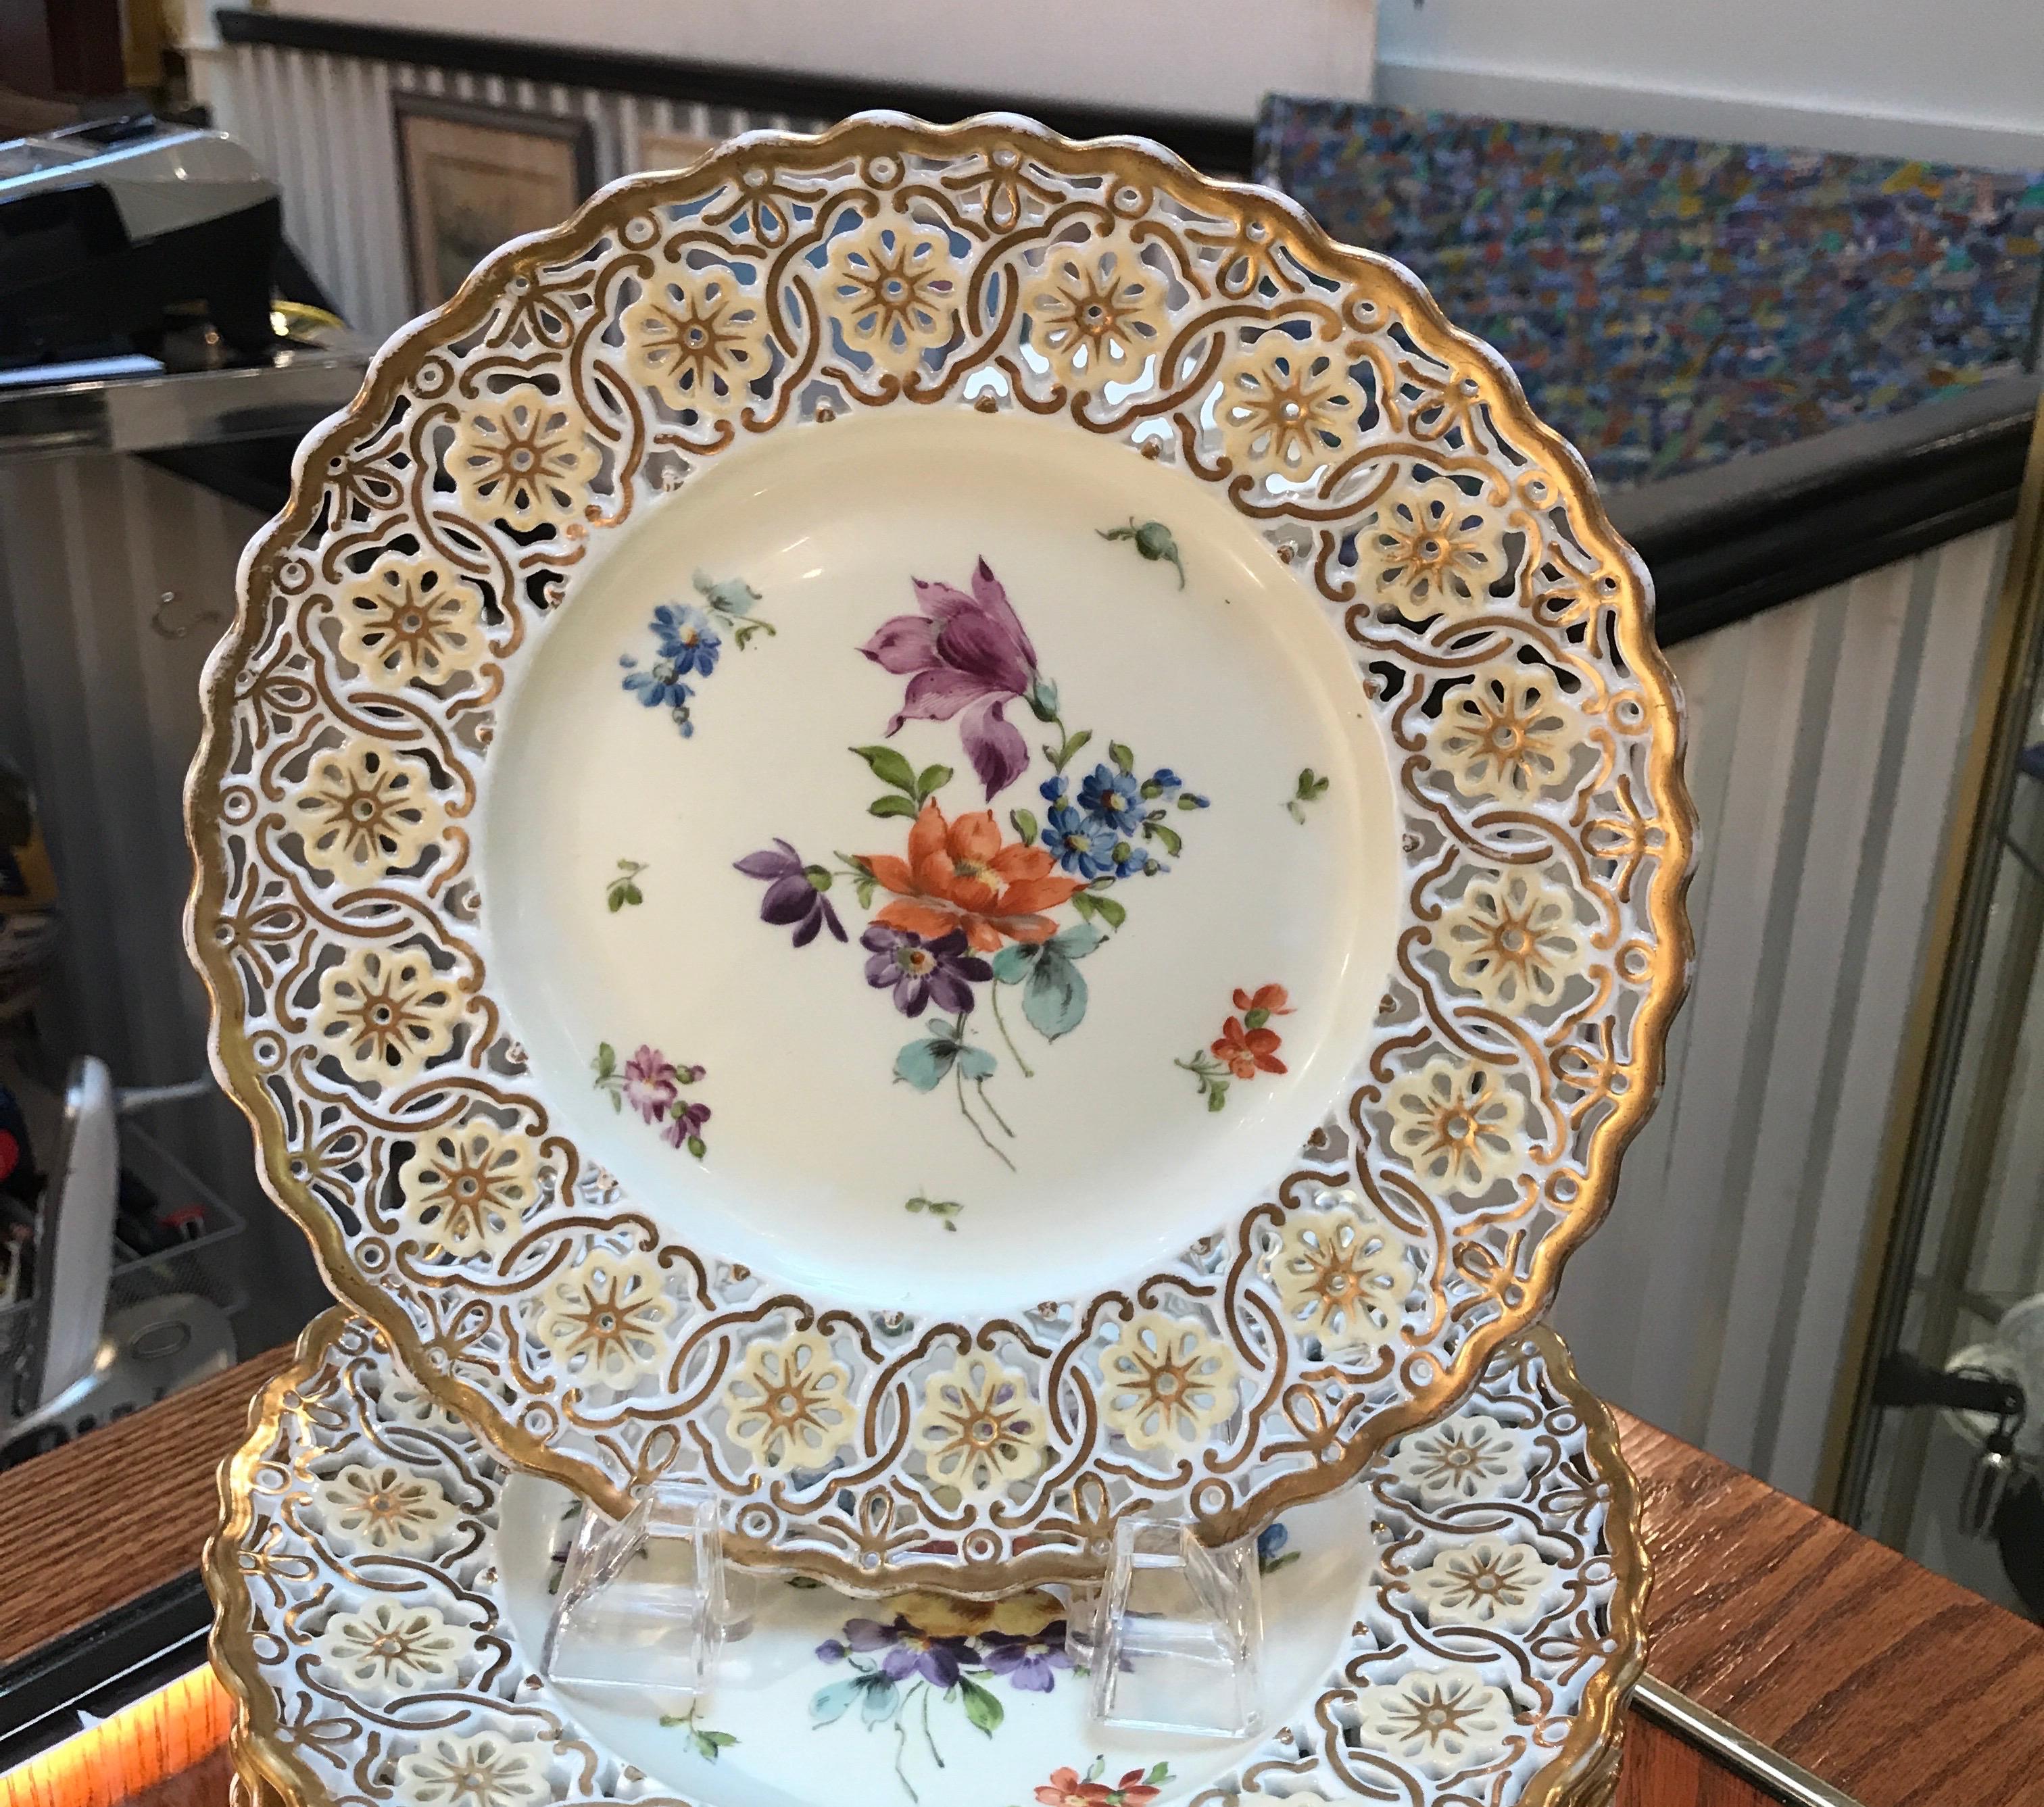 Magnifiques assiettes en porcelaine allemande peintes à la main avec une décoration florale de Dresde. Les bordures sont percées et dorées tout autour. Marqué fabriqué en Allemagne, vers 1920. Parfaites comme assiettes d'armoire ou assiettes